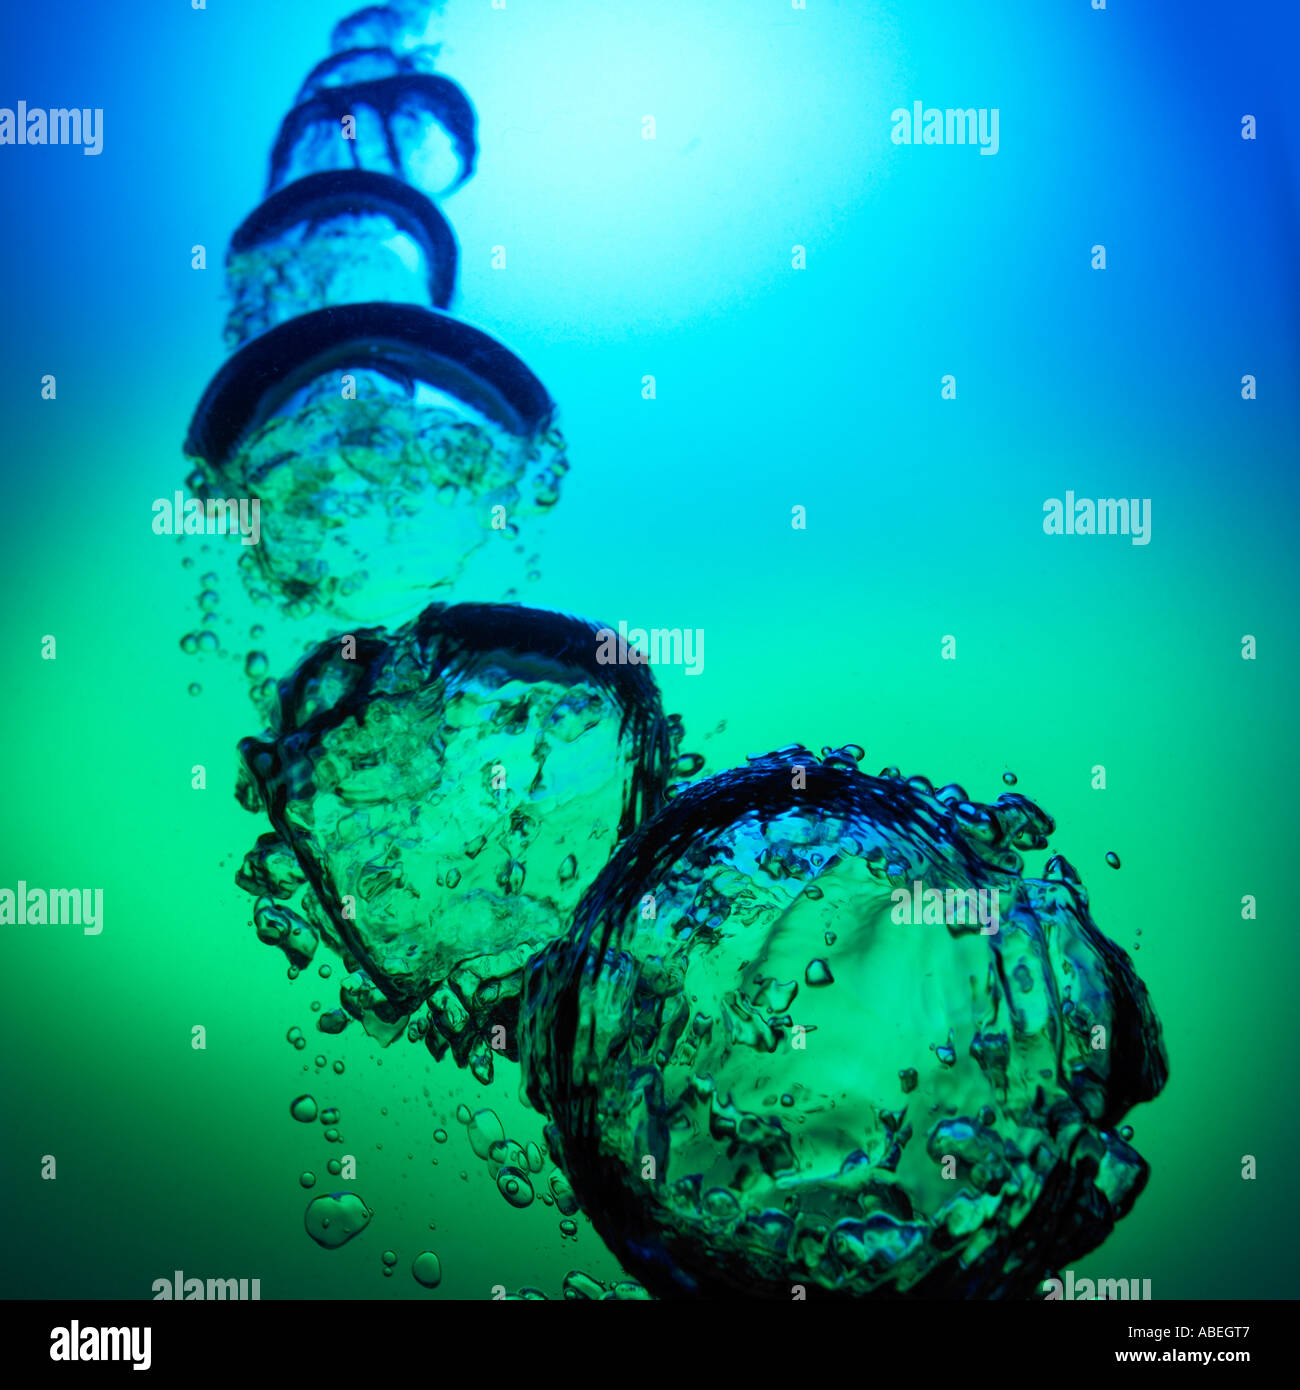 Luftblasen im water.water, Bläschen, blau, grün, graduiert, Wassereffekte, splash, hetzen, Bewegung, Energie. Stockfoto